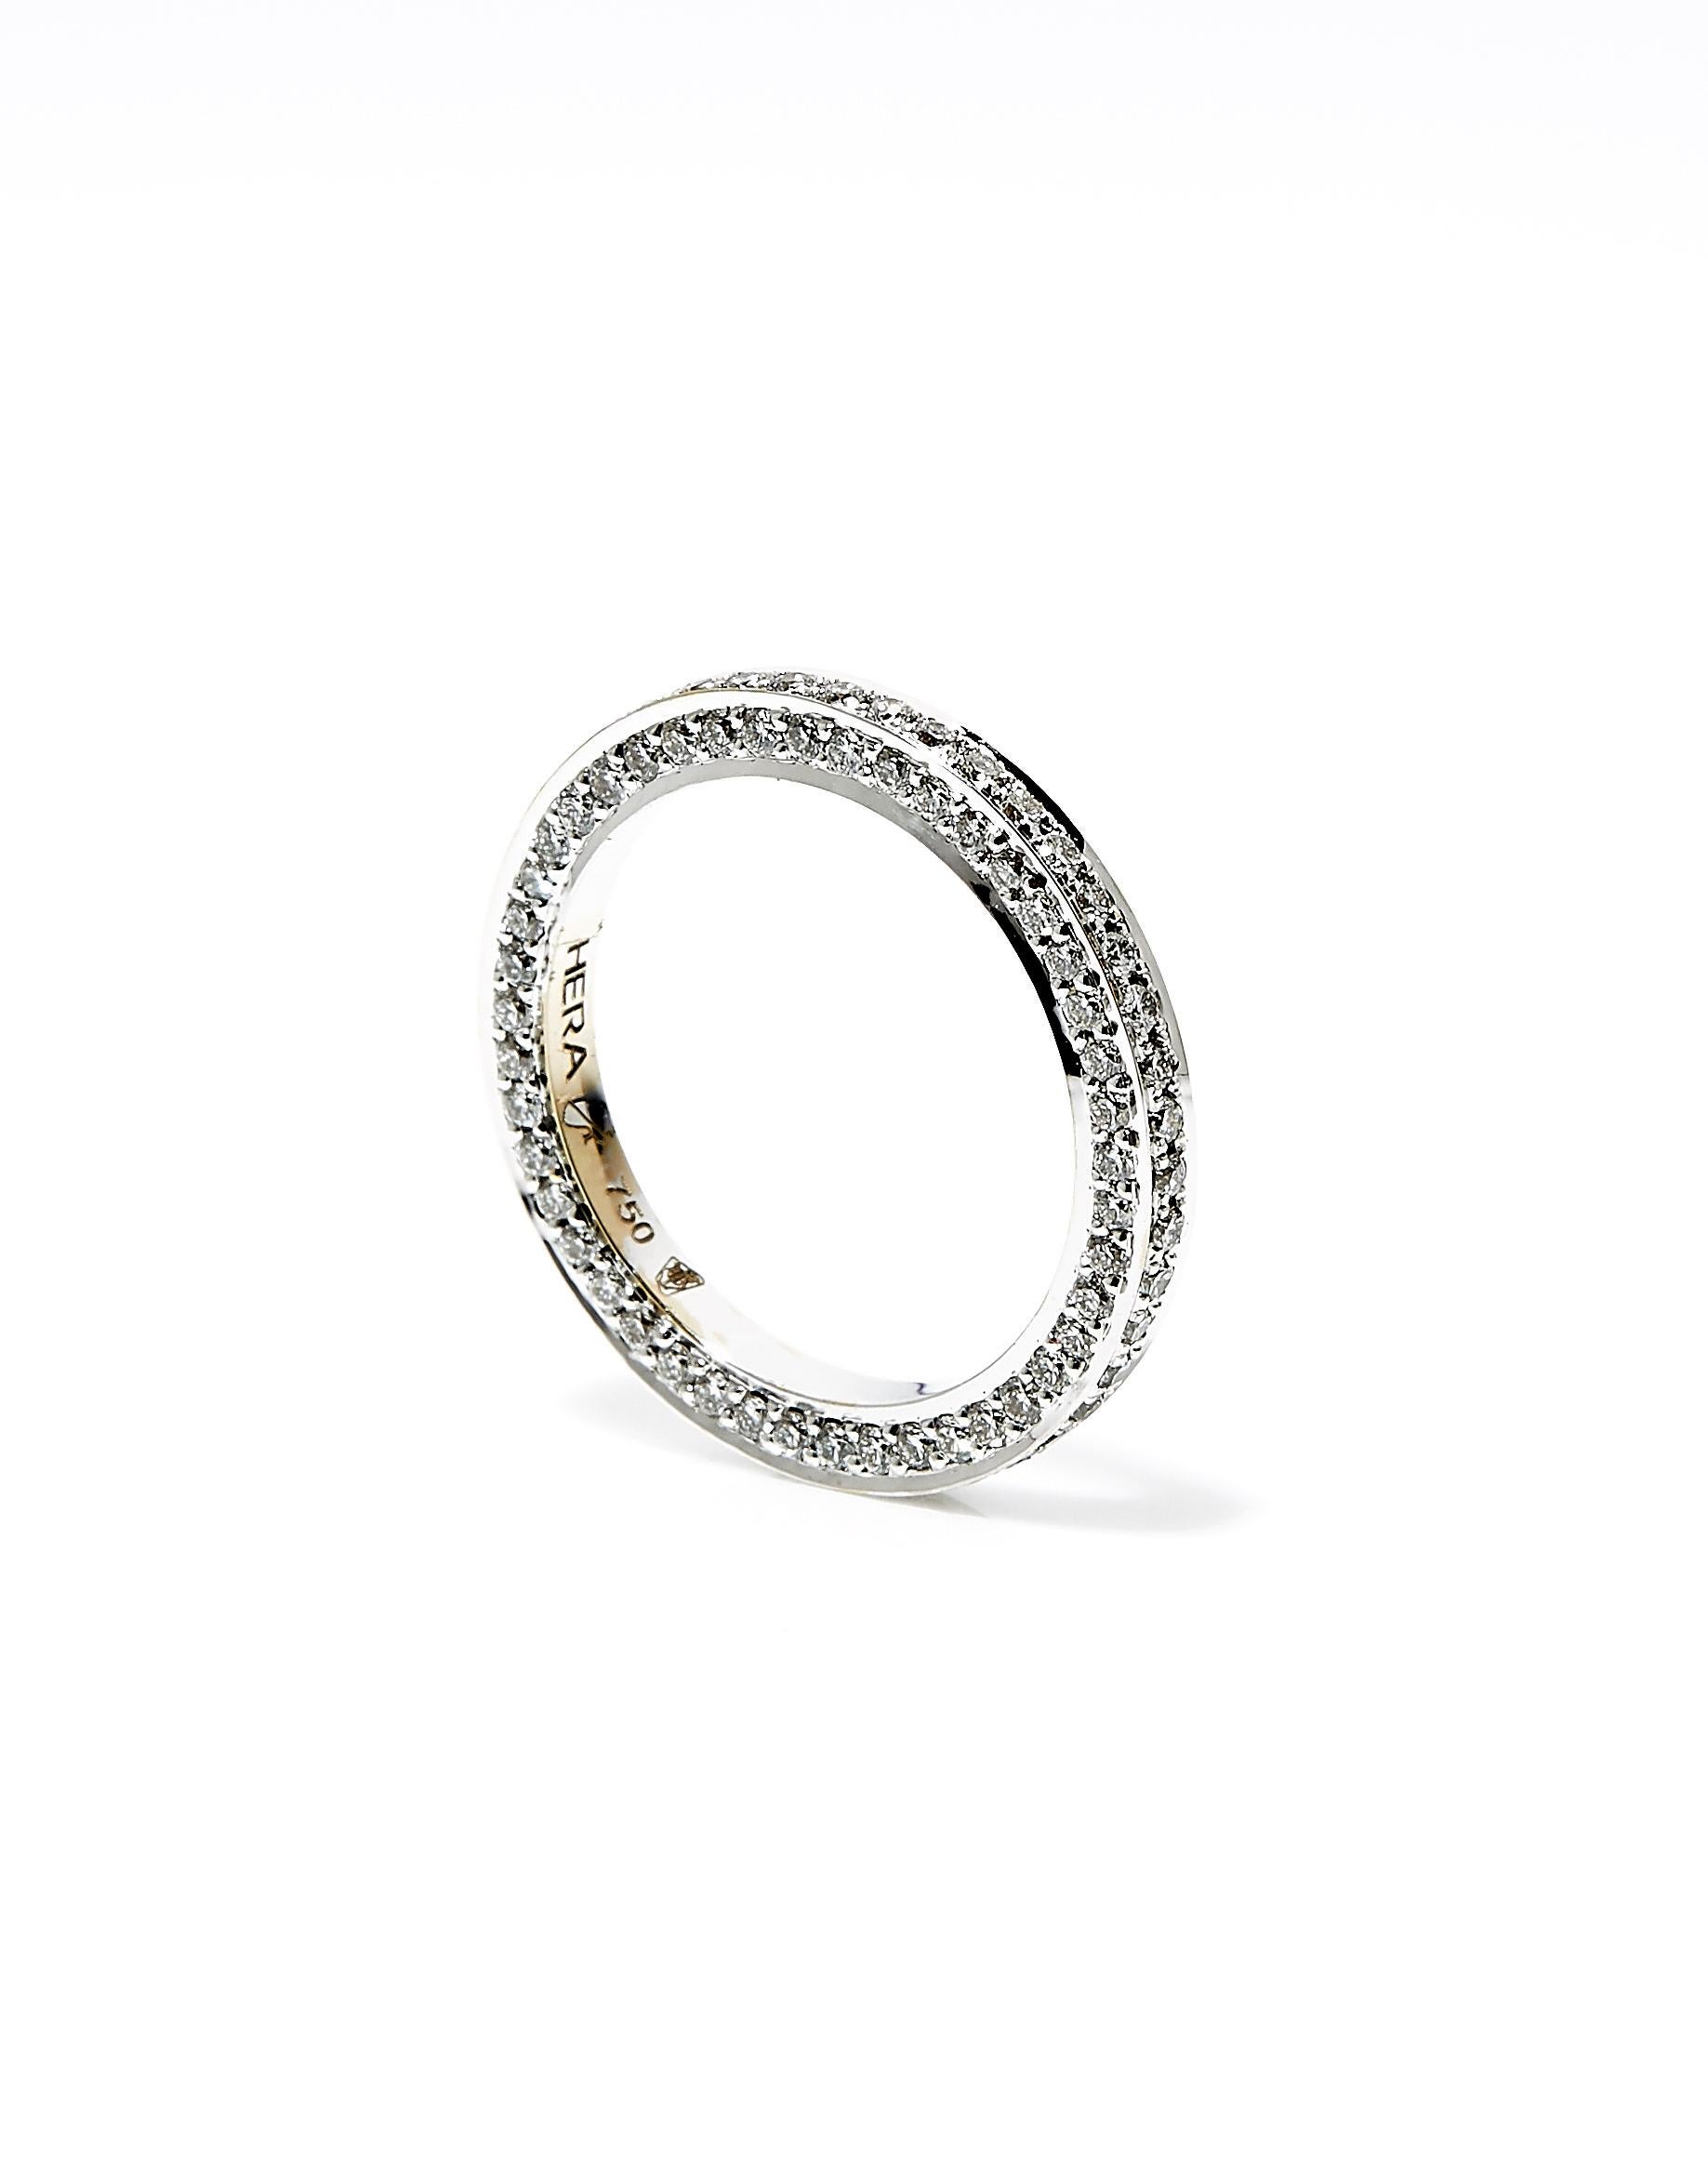 18 carat white gold ring